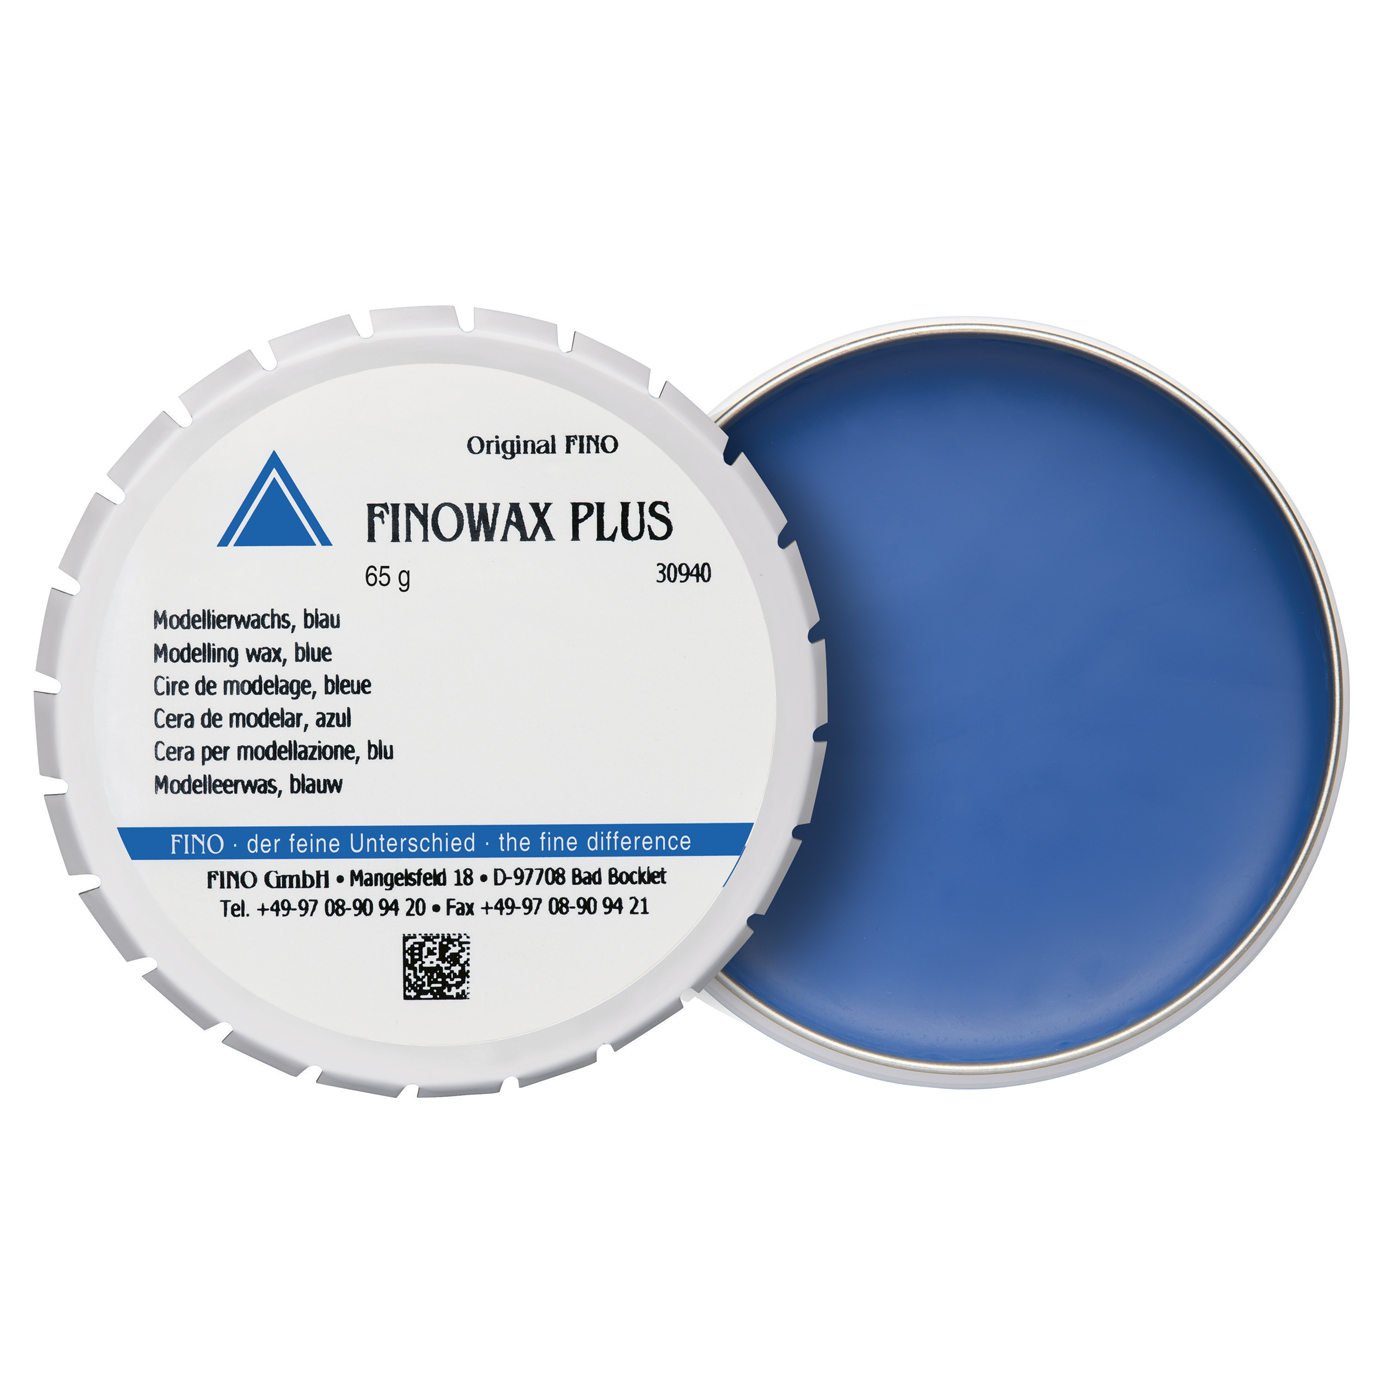 FINOWAX PLUS Modellierwachs, blau - 65 g